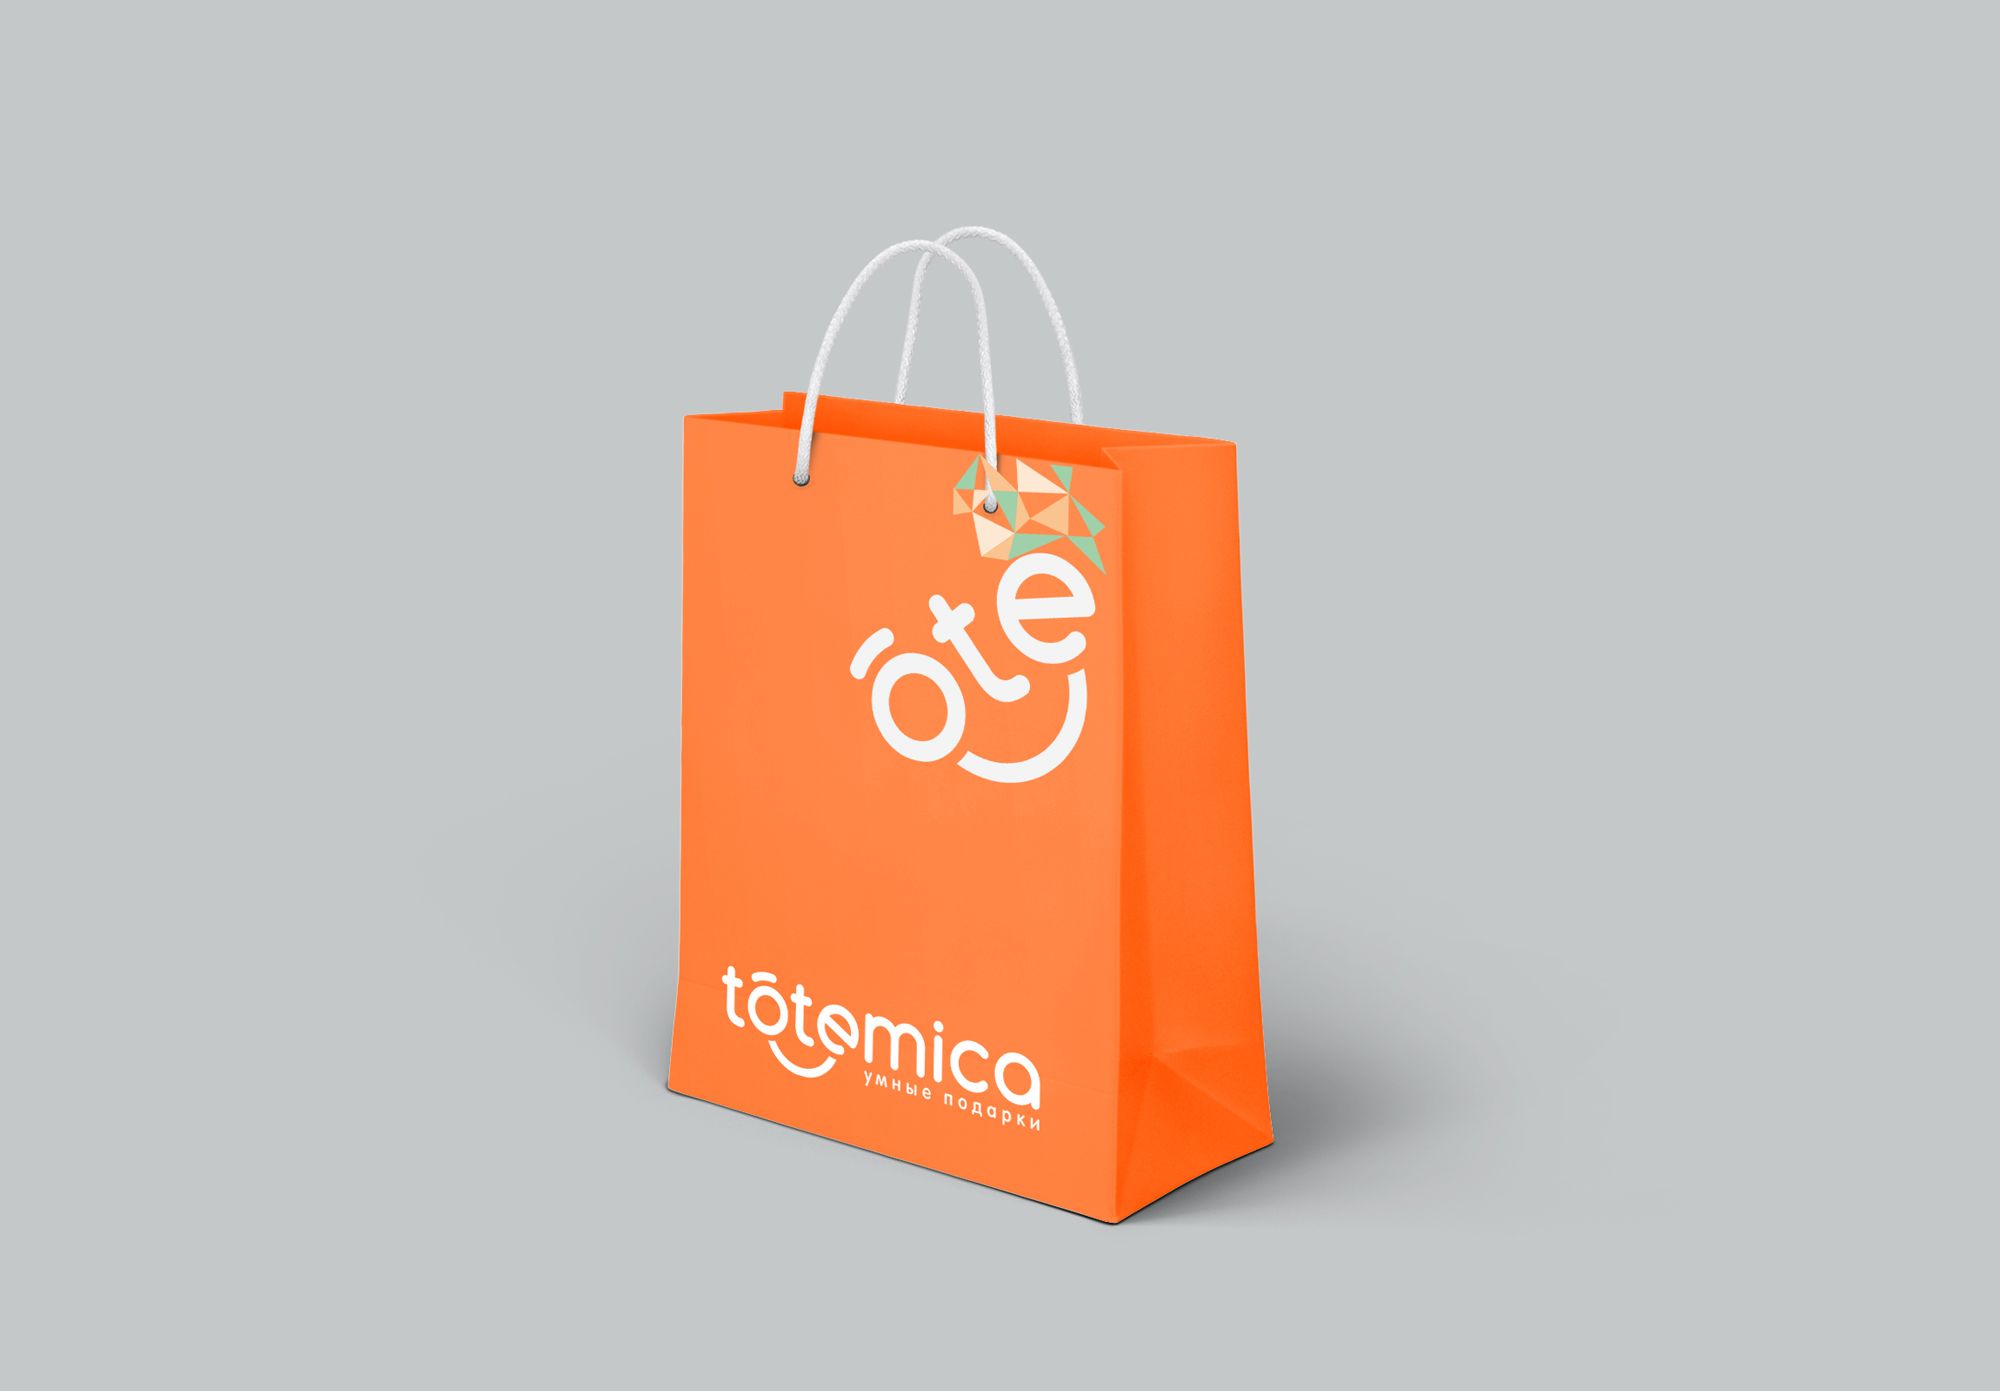 Лого и ФС для ИМ подарков Totemica - дизайнер luishamilton